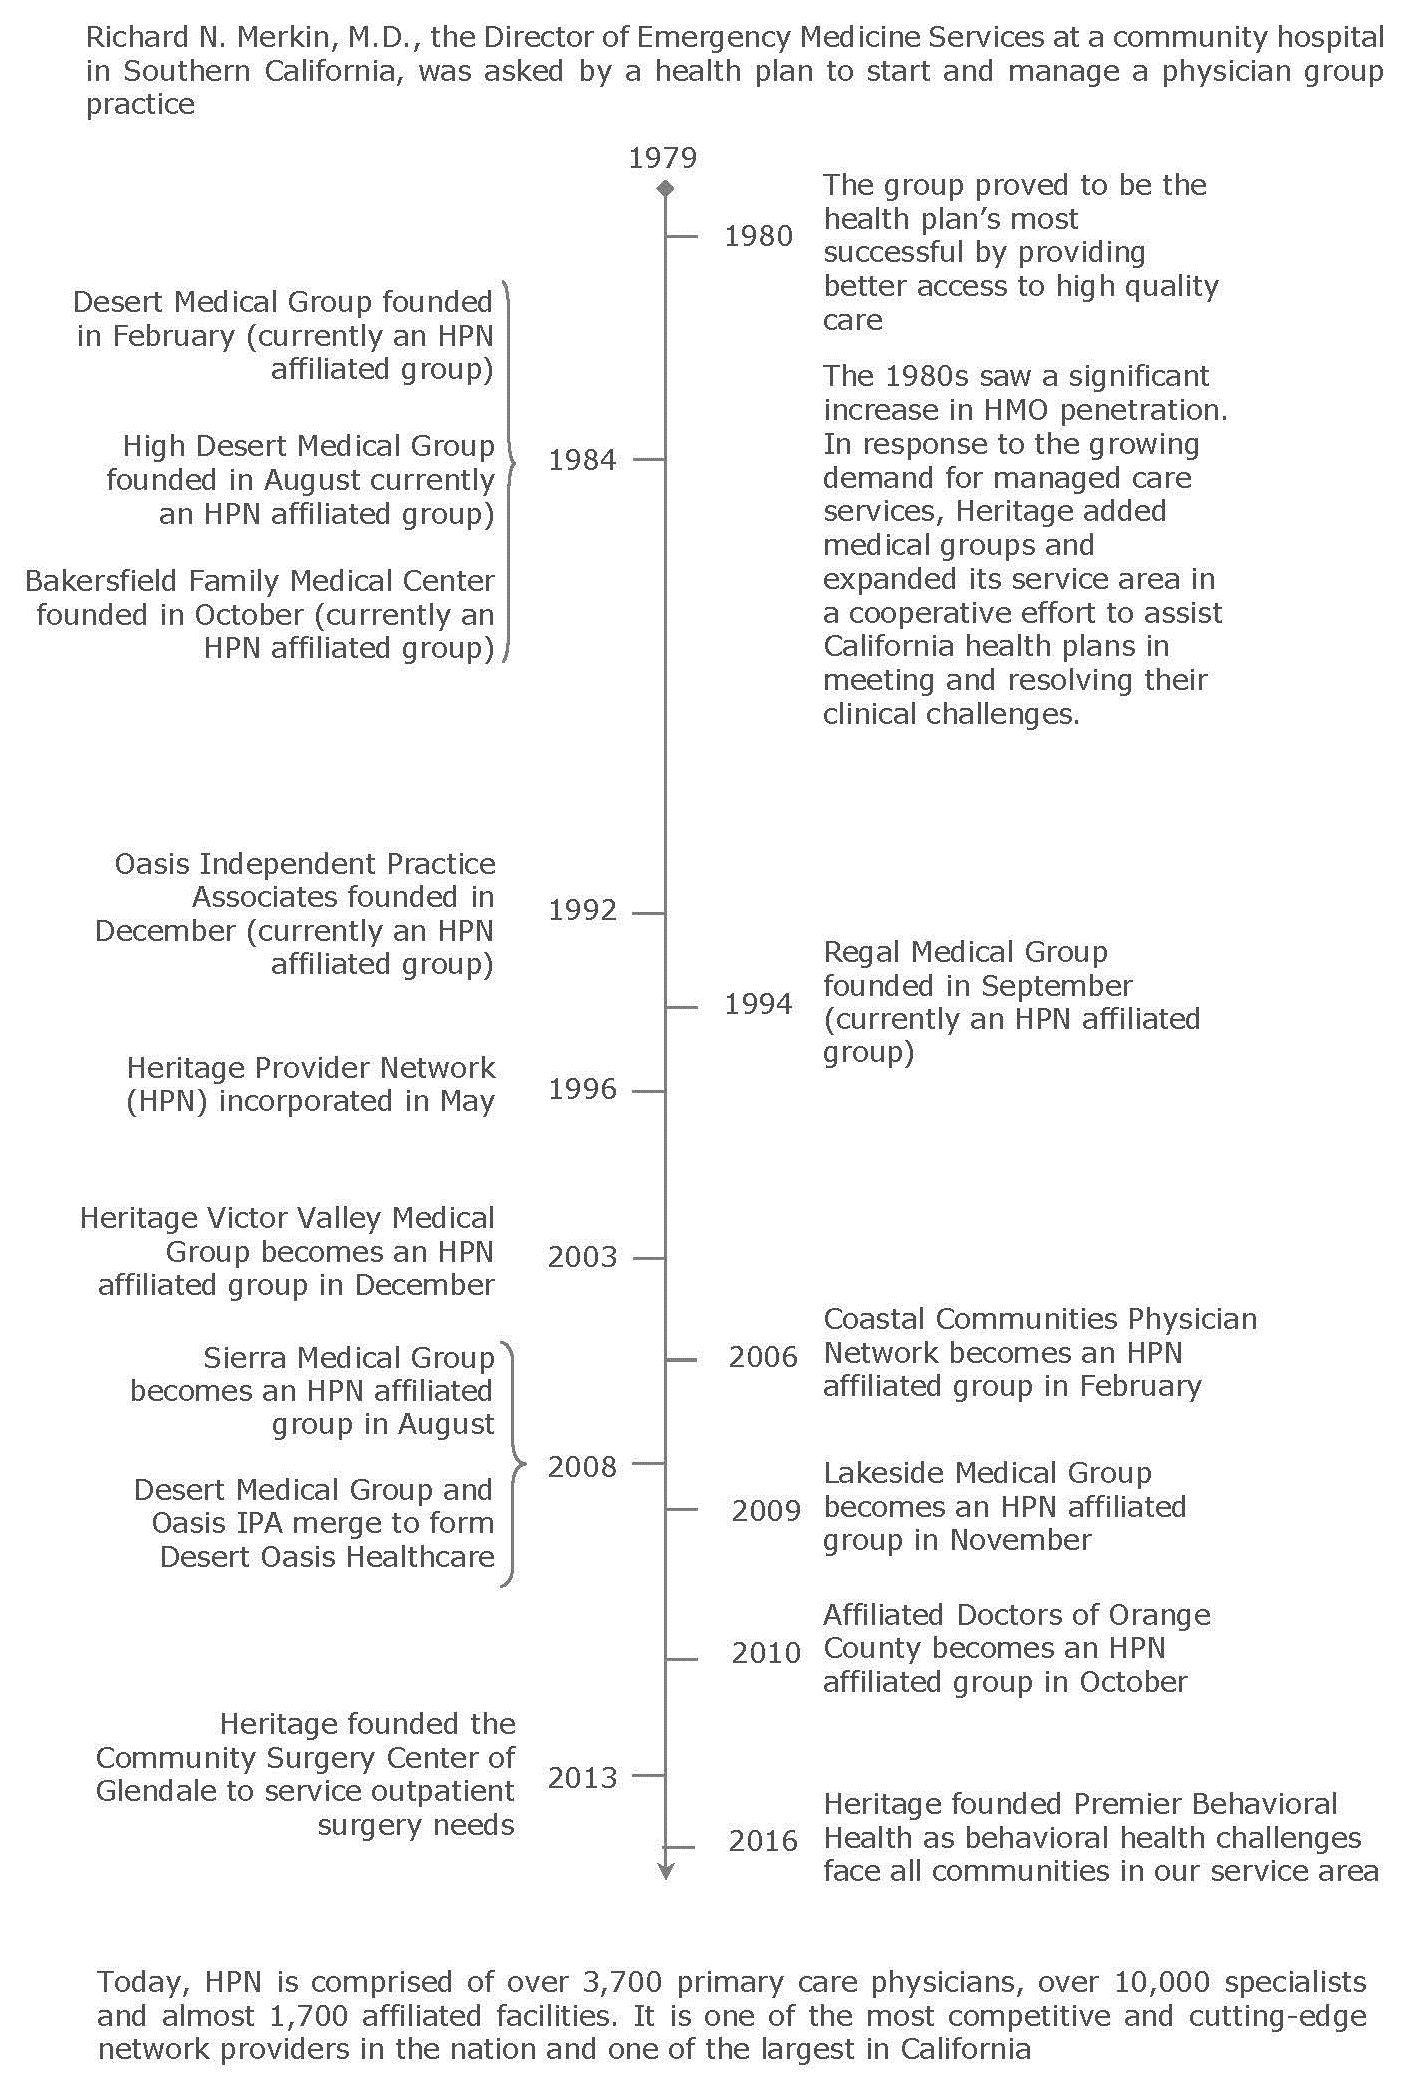 Historical Timeline of HPN